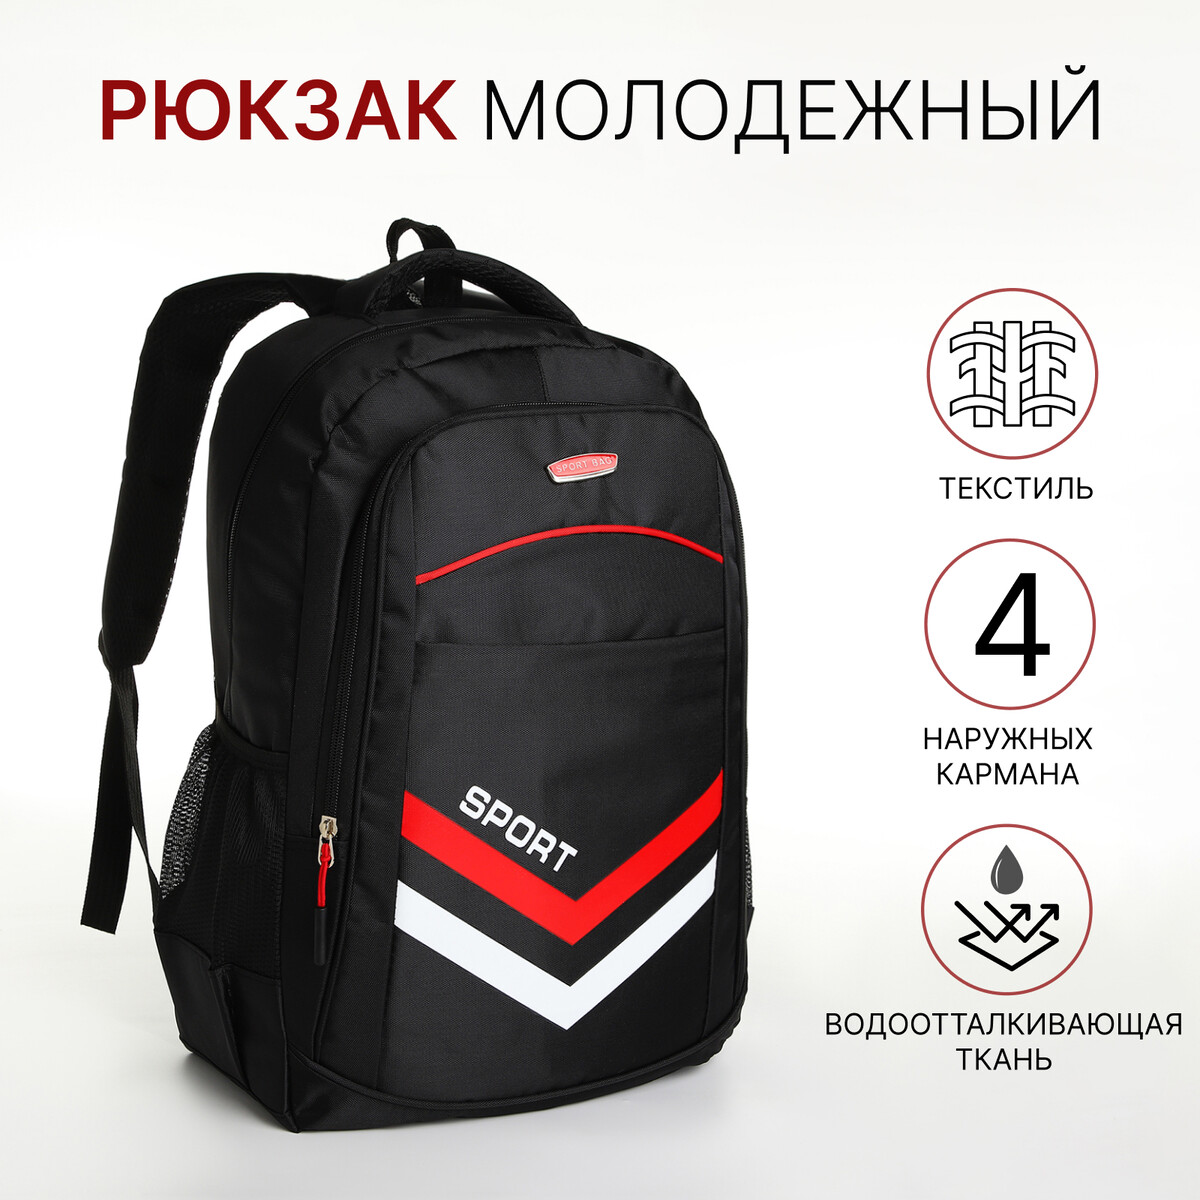 Рюкзак молодежный на молнии, 4 кармана, цвет черный/красный